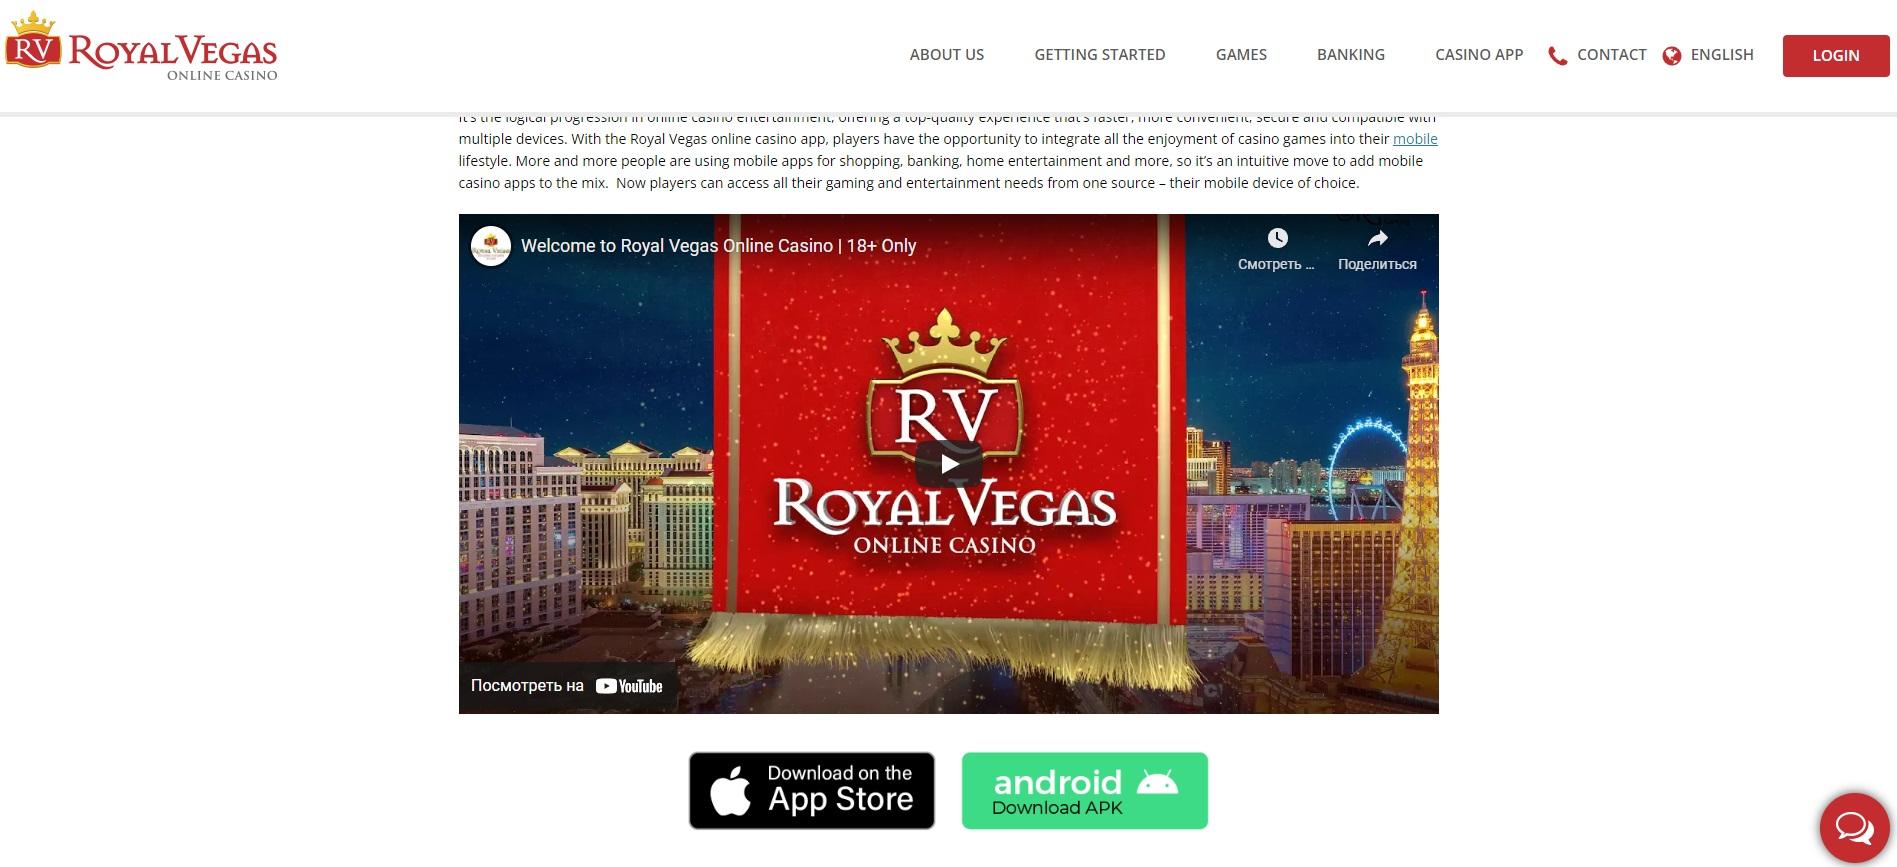 RoyalVegas mobile app